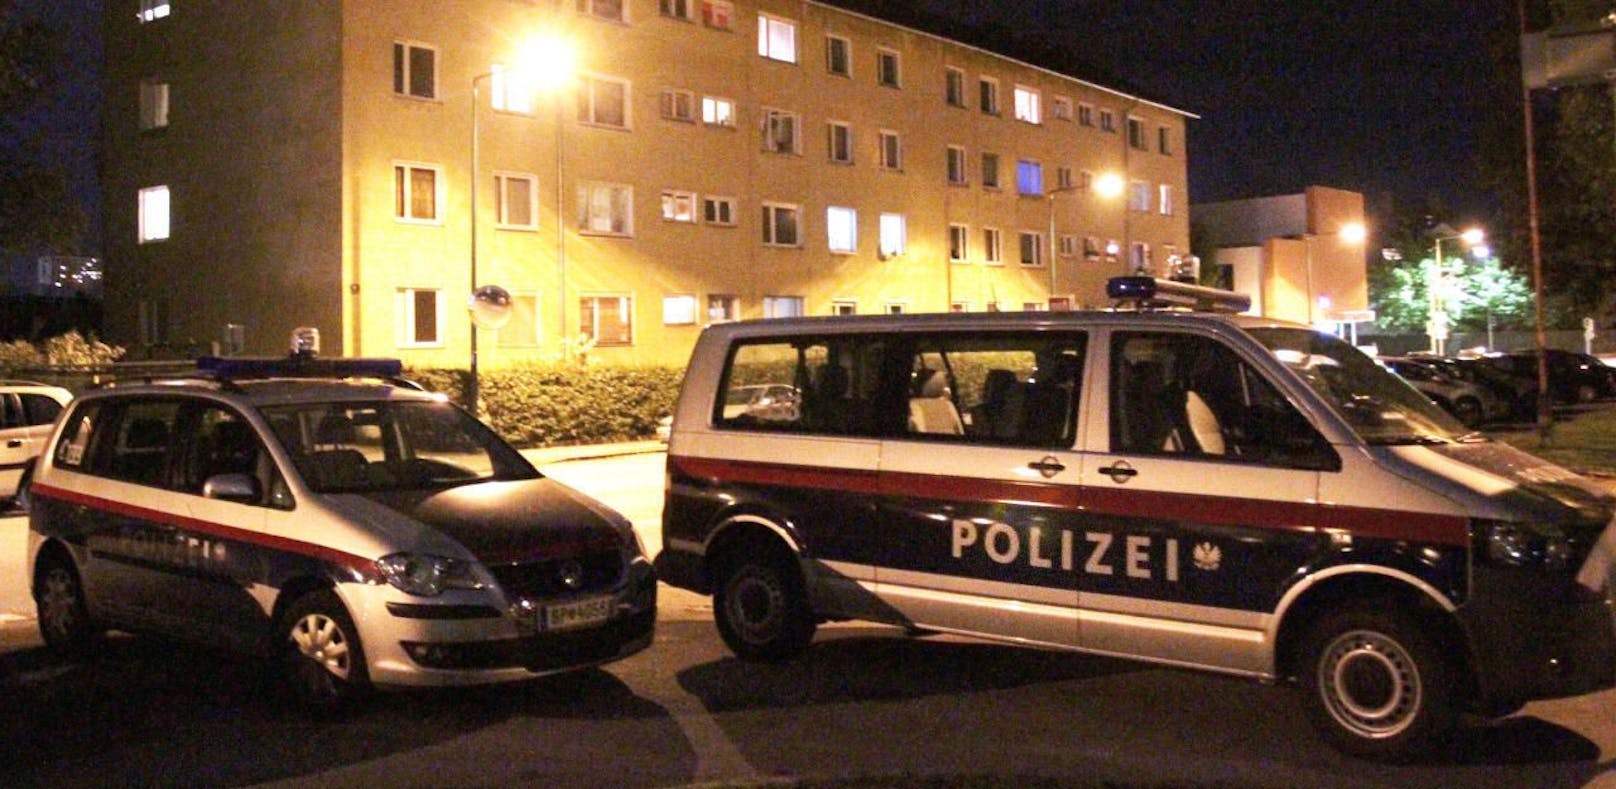 Abendlicher Polizeieinsatz in Salzburg.